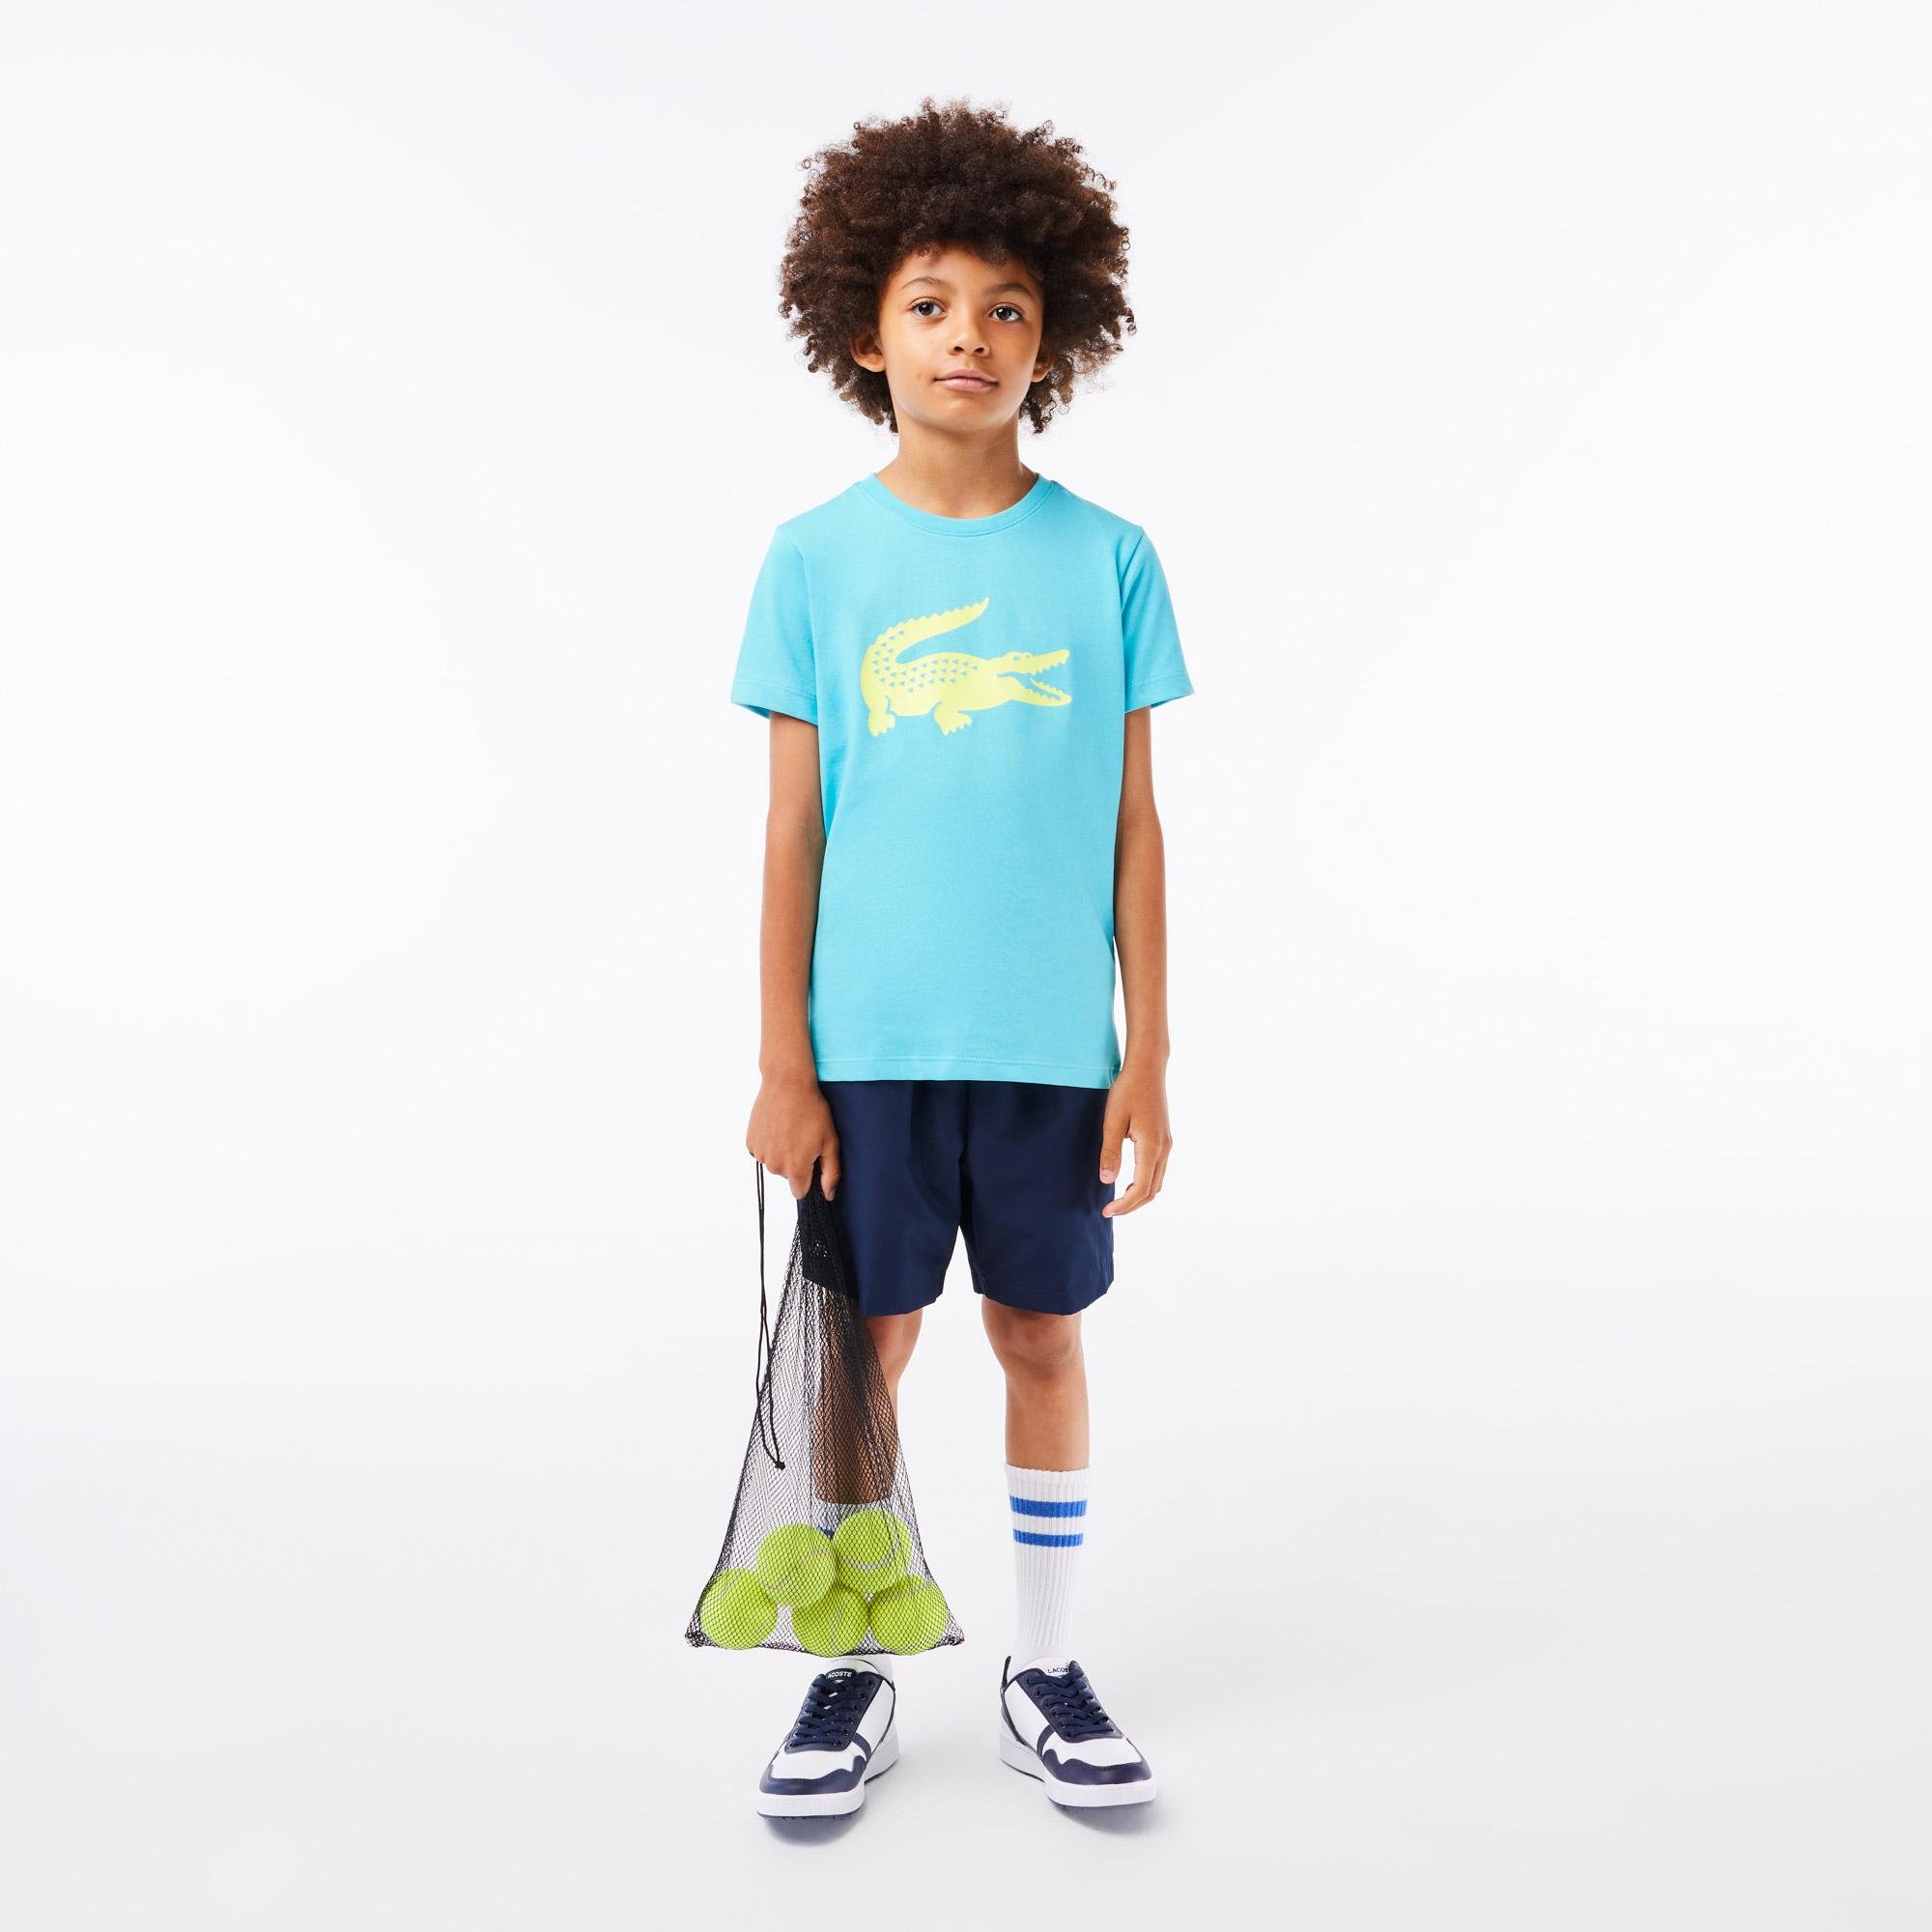 Lacoste dětské tenisové tričko SPORT z technické pleteniny s velkým krokodýlem